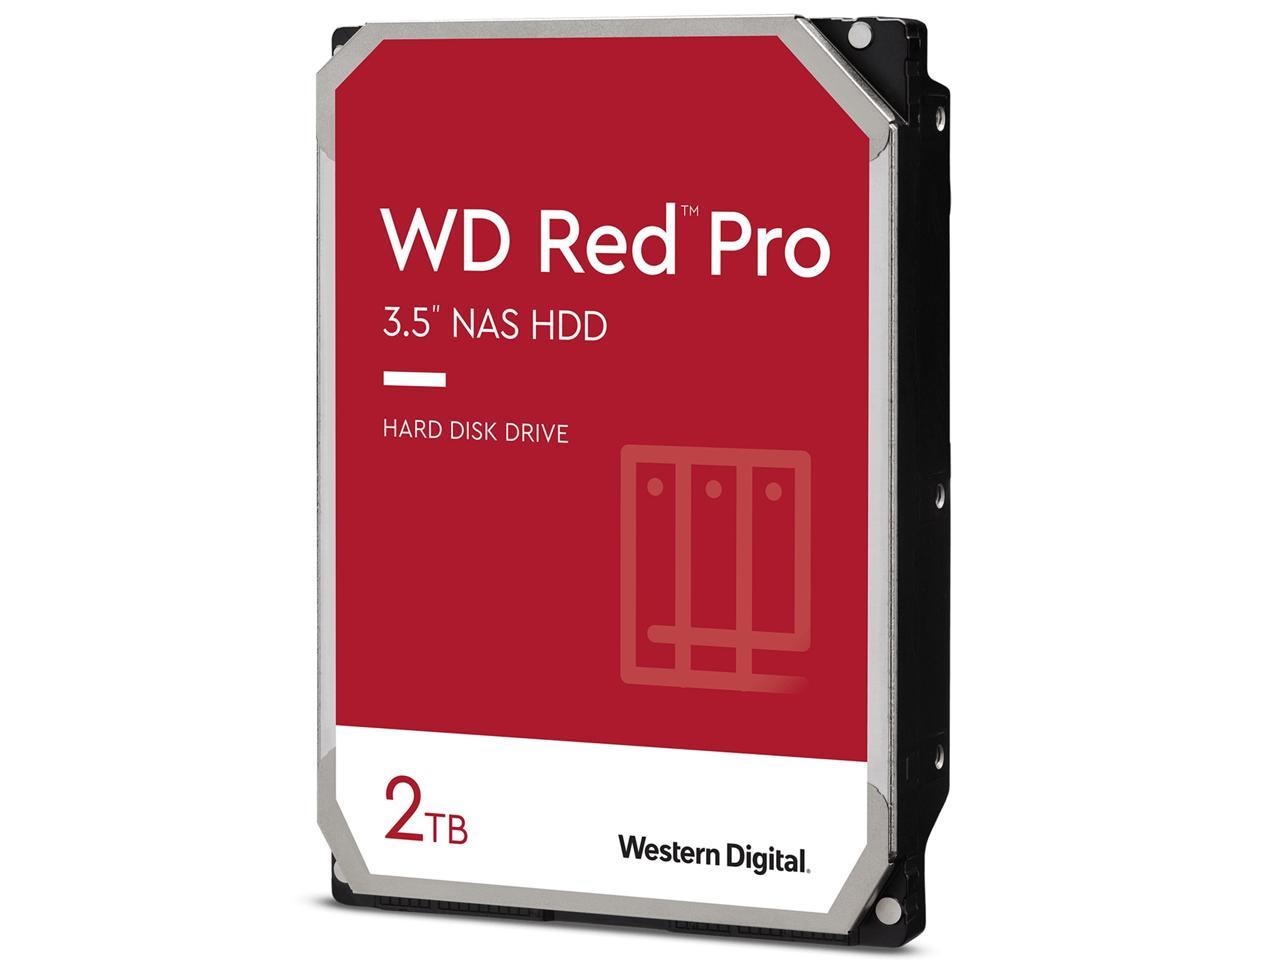 Wd Red Pro Nas Hard Drive Wd2002Ffsx - Internal Hard Drive - 2 Tb - 3.5" - Sata 6Gb/S - 7200 Rpm - Buffer: 64 Mb